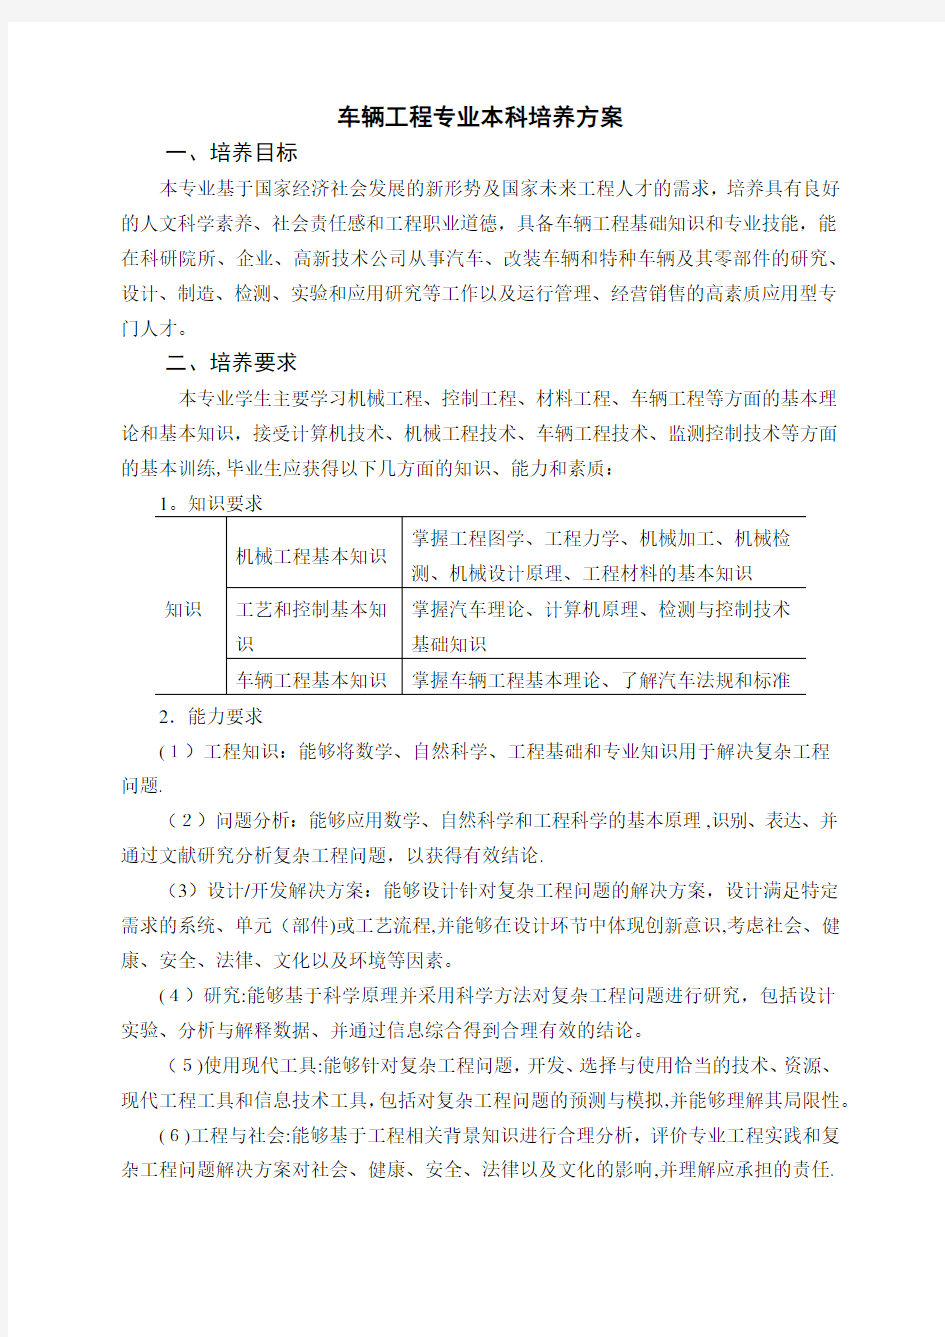 中南大学版本科人才培养方案修订原则意见 (2).docx